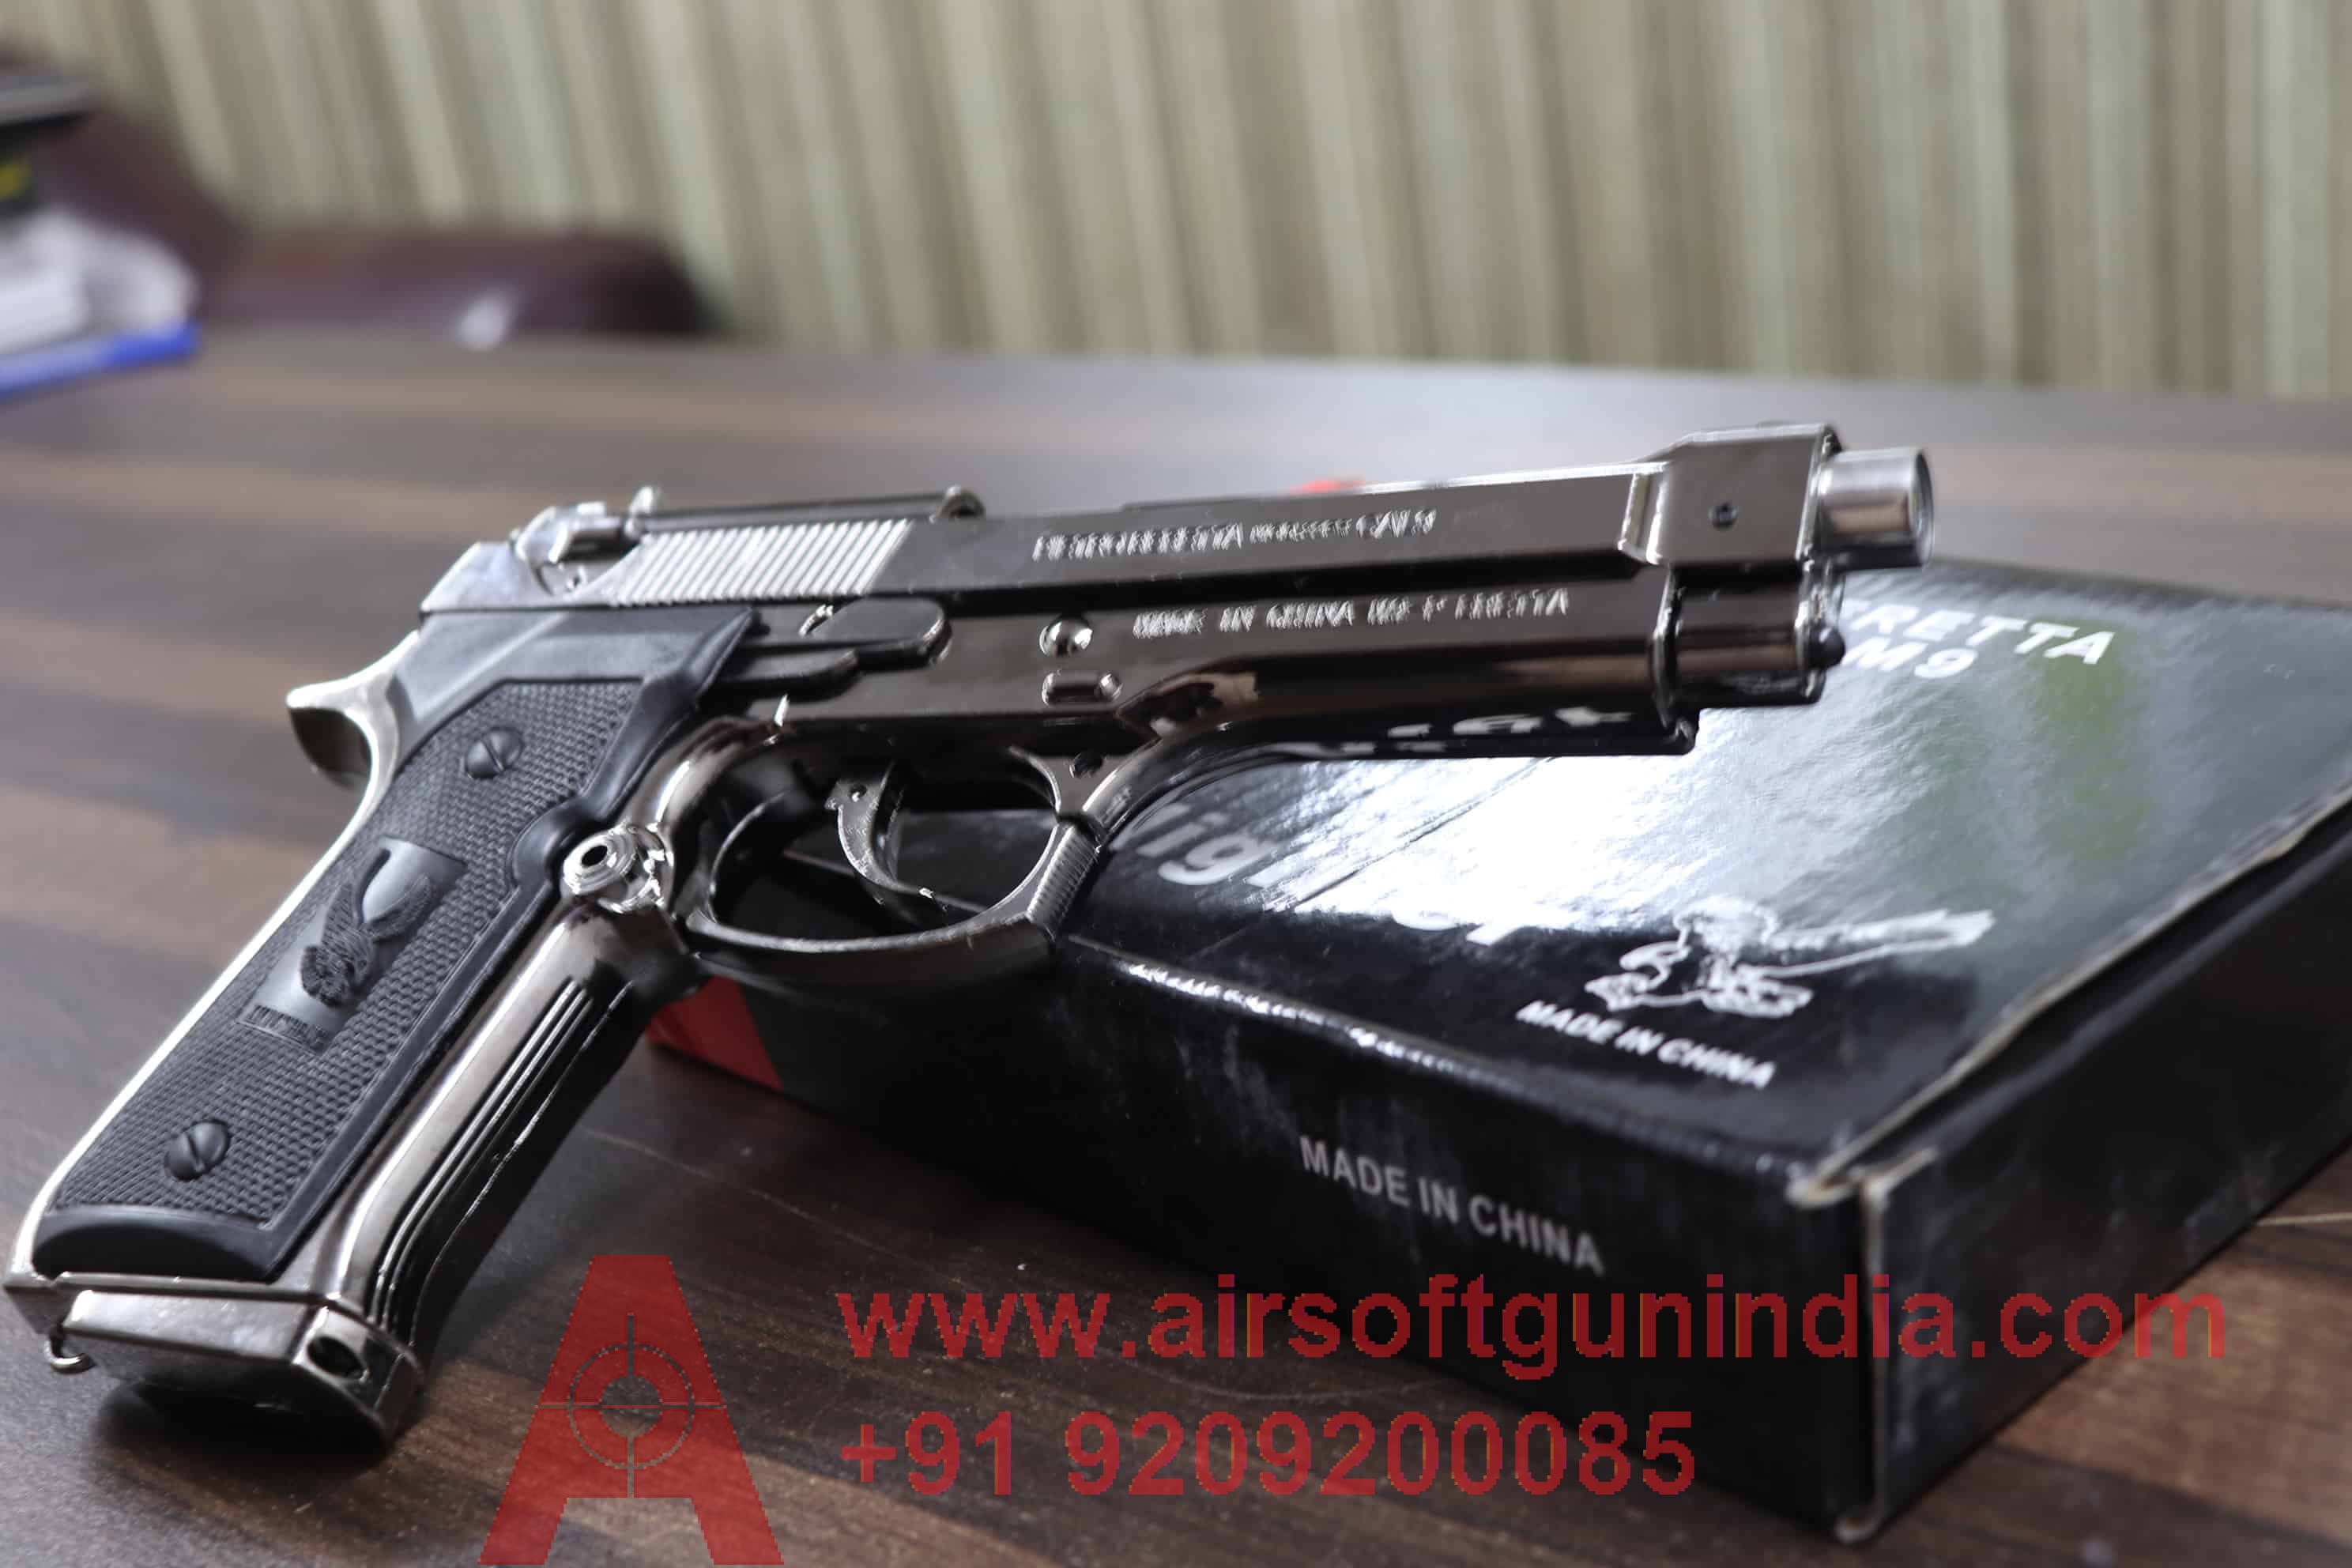 MK683-1 Airsoft Rifle By Airsoft Gun India